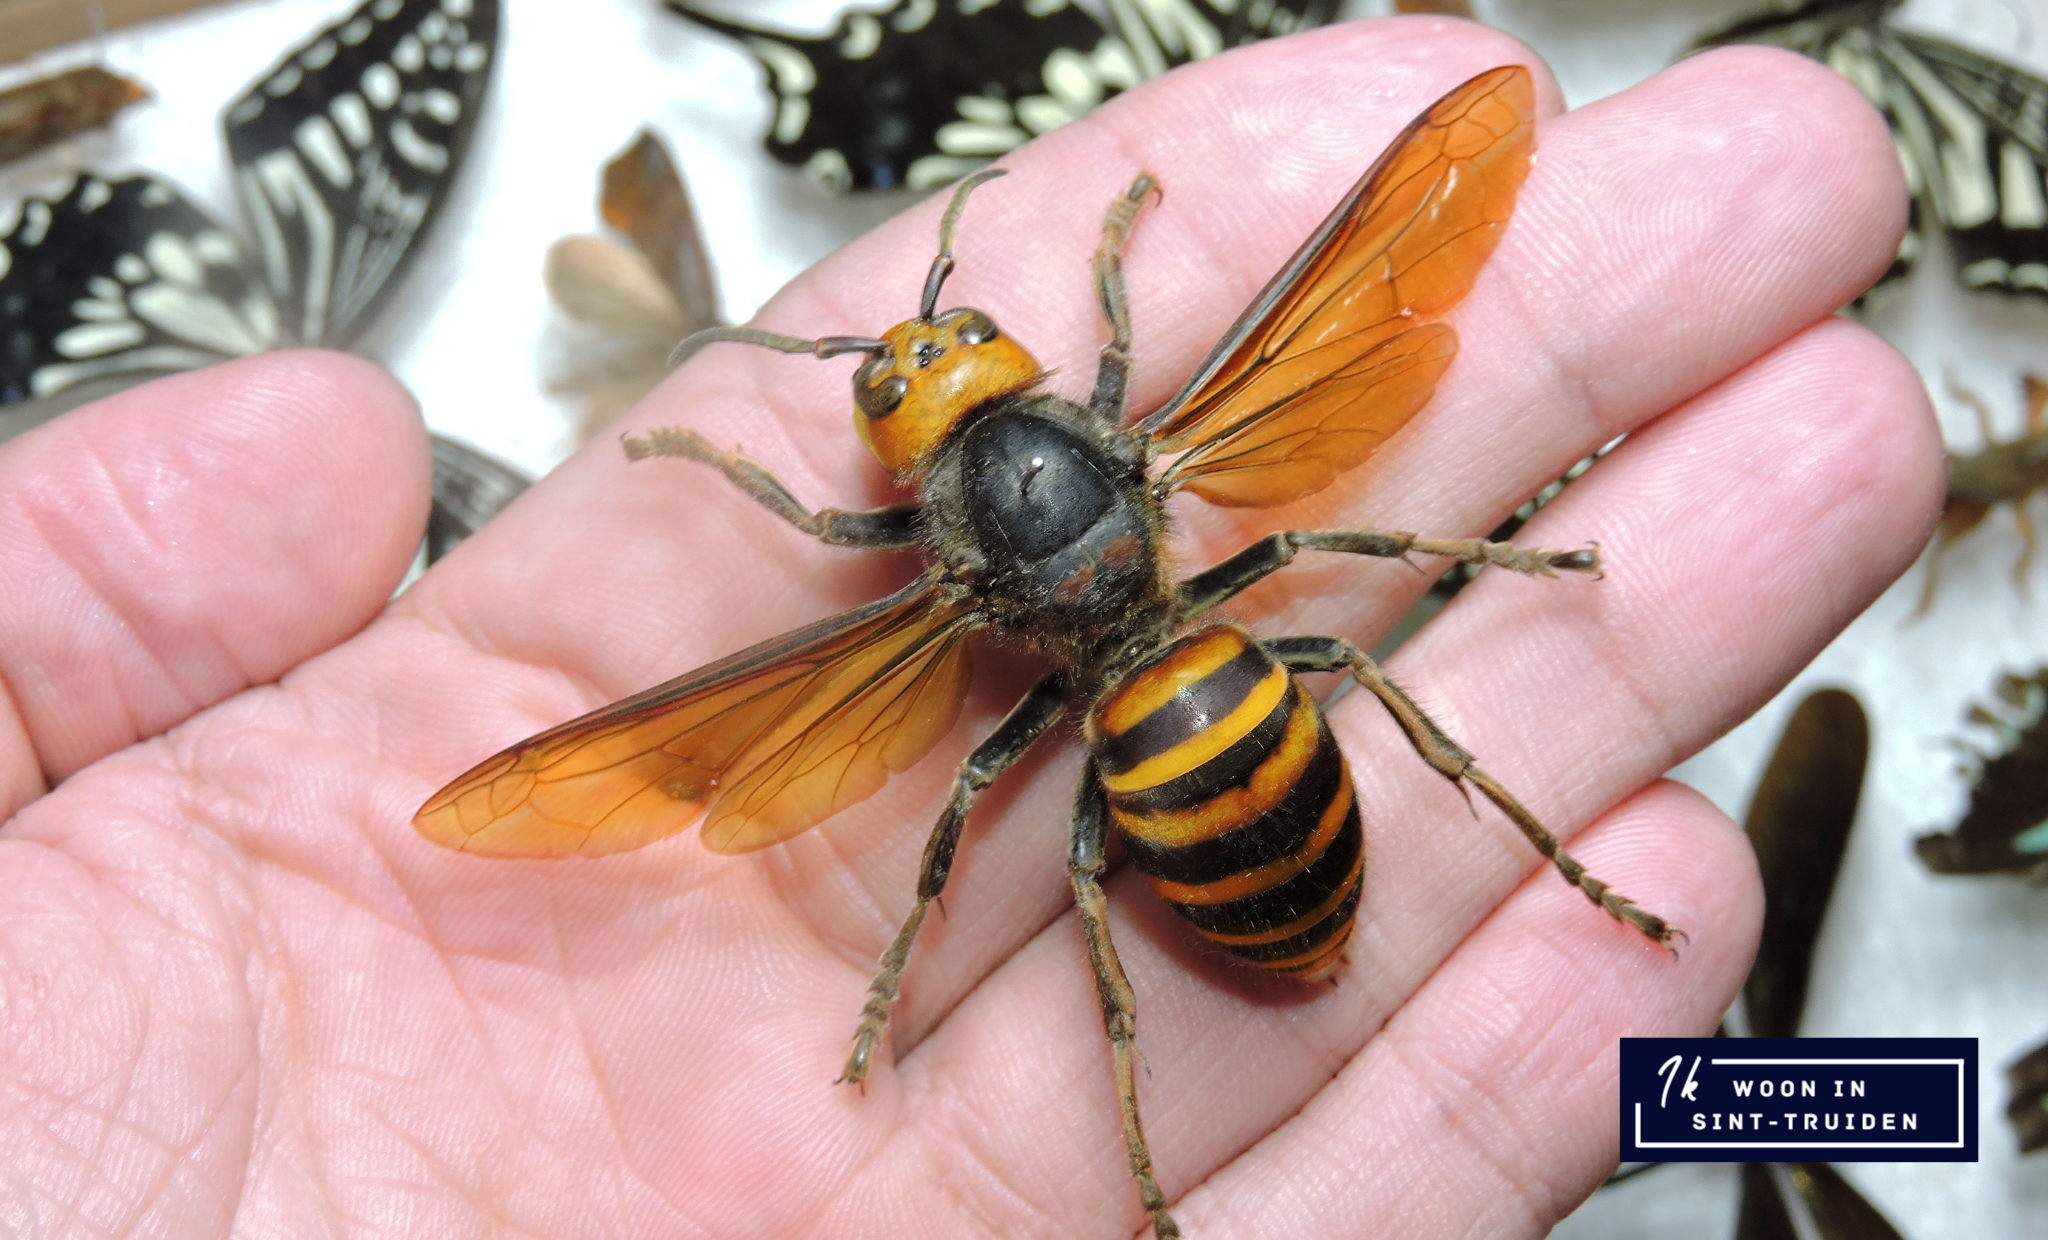 Strijd tegen de Aziatische hoornaar in Sint-Truiden